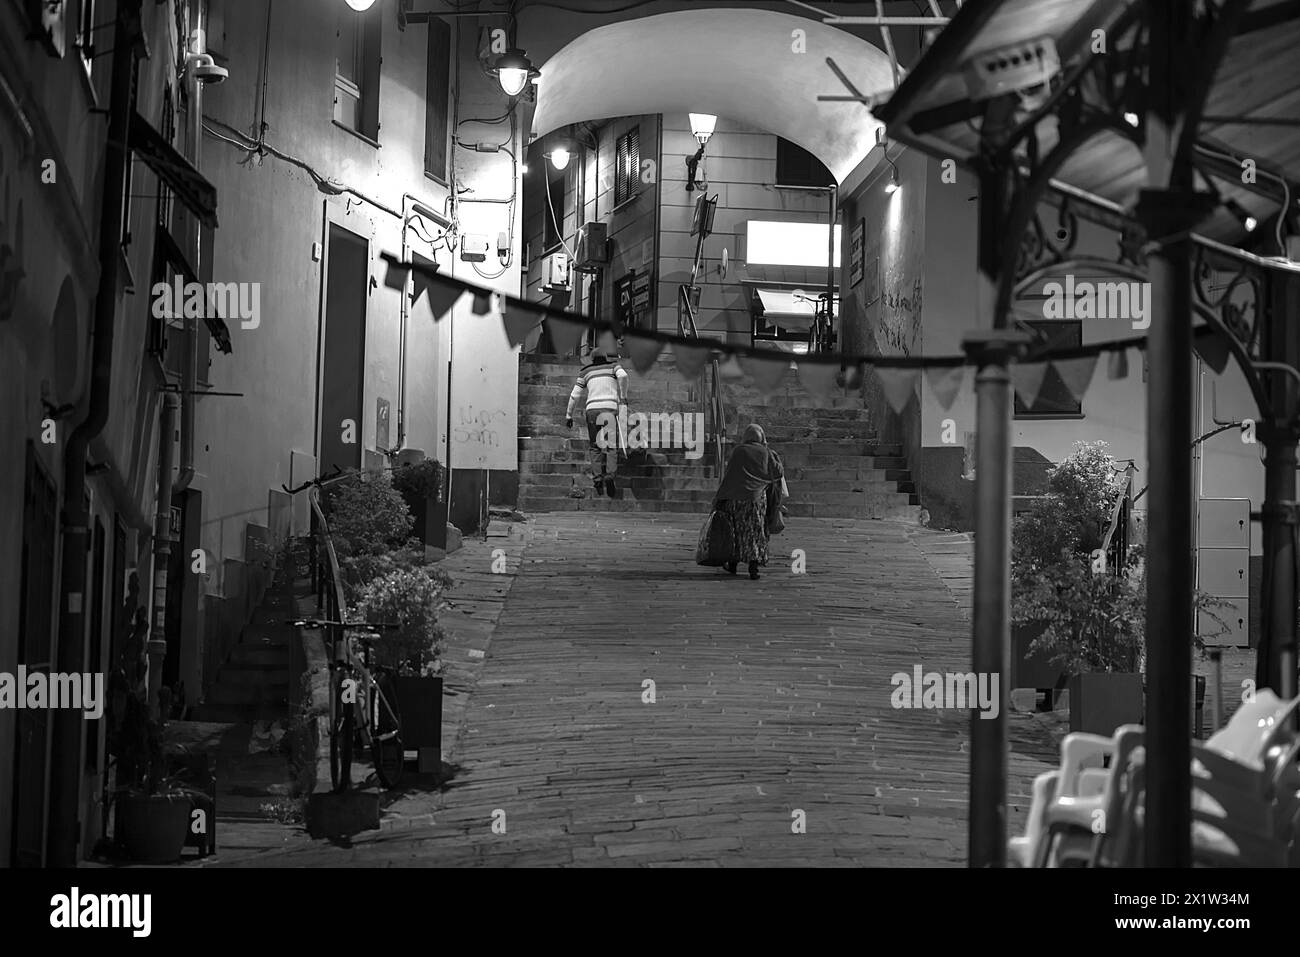 Deux résidents avec des valises, rentrant à la maison dans la soirée d'un voyage, vieille ville de Gênes, Italie Banque D'Images